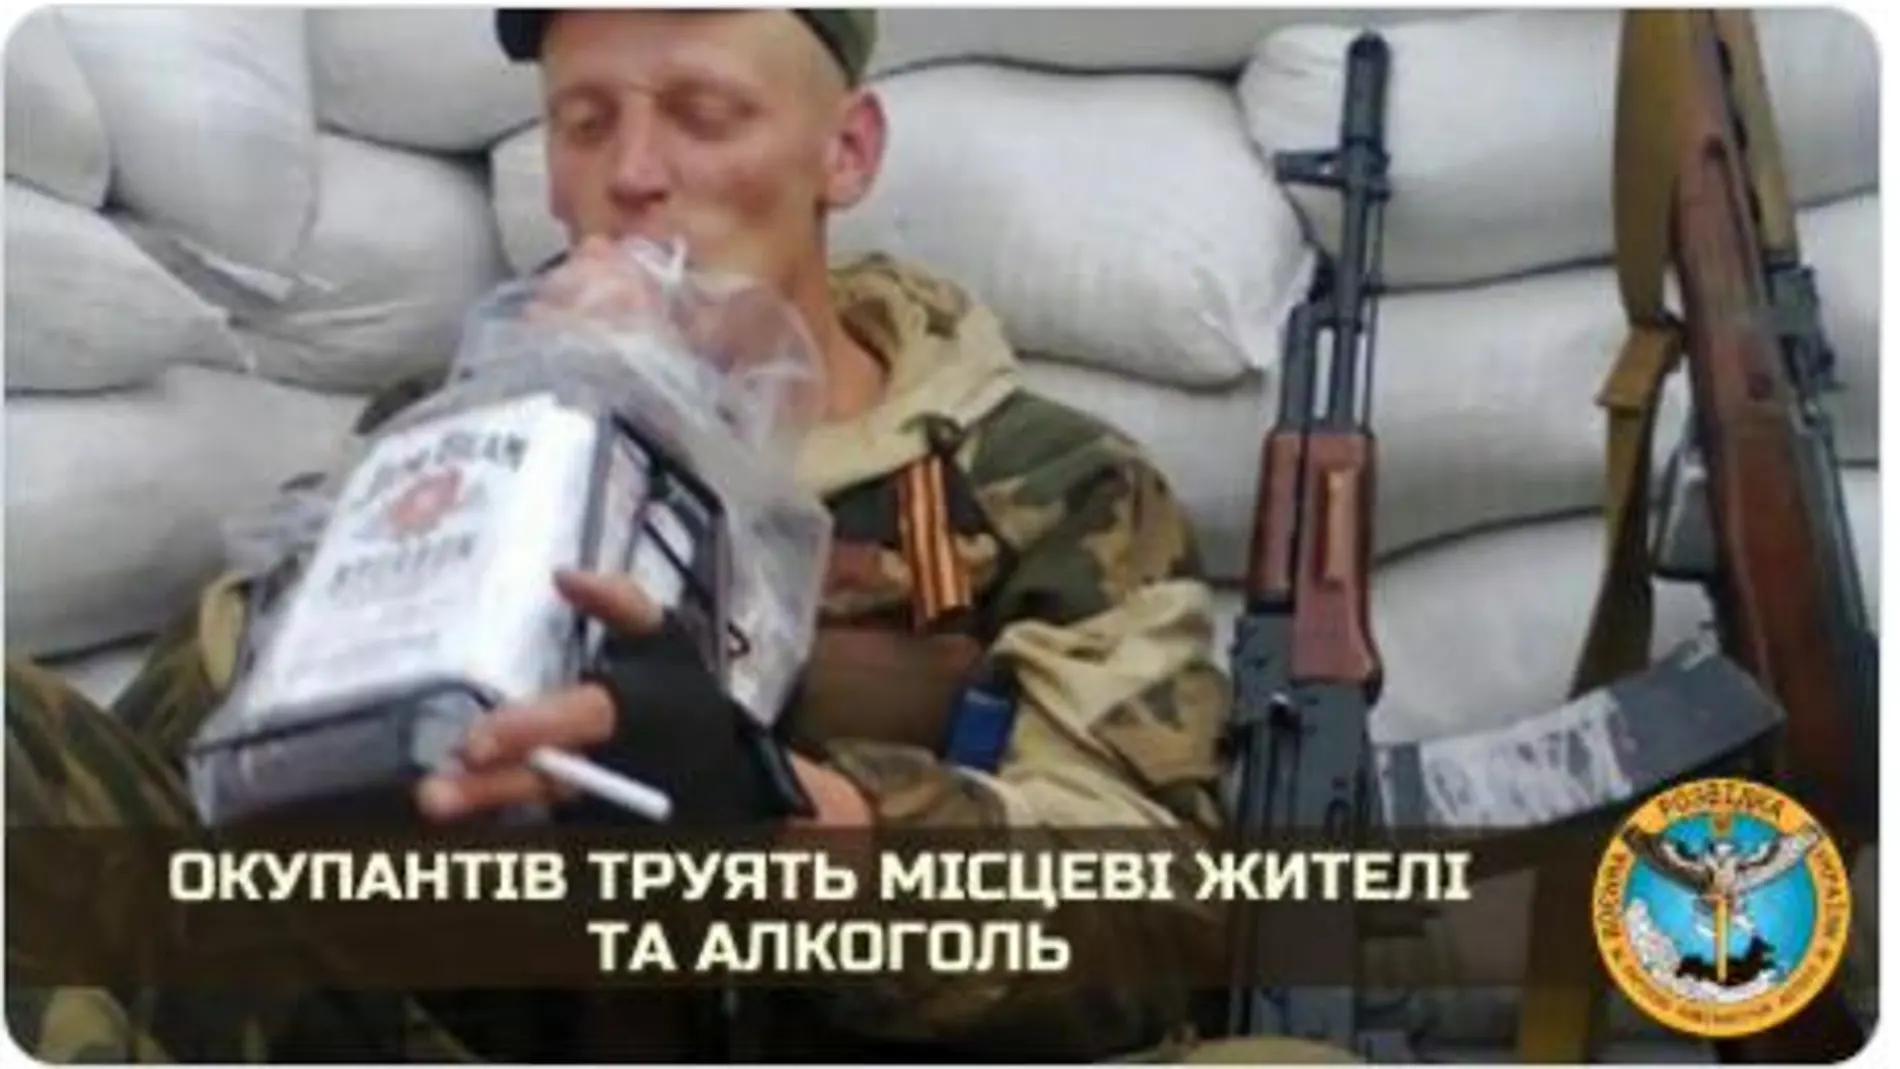 Imagen de soldado ruso bebiendo un producto alcohólico, distribuida por el Servicio de Inteligencia ucraniano